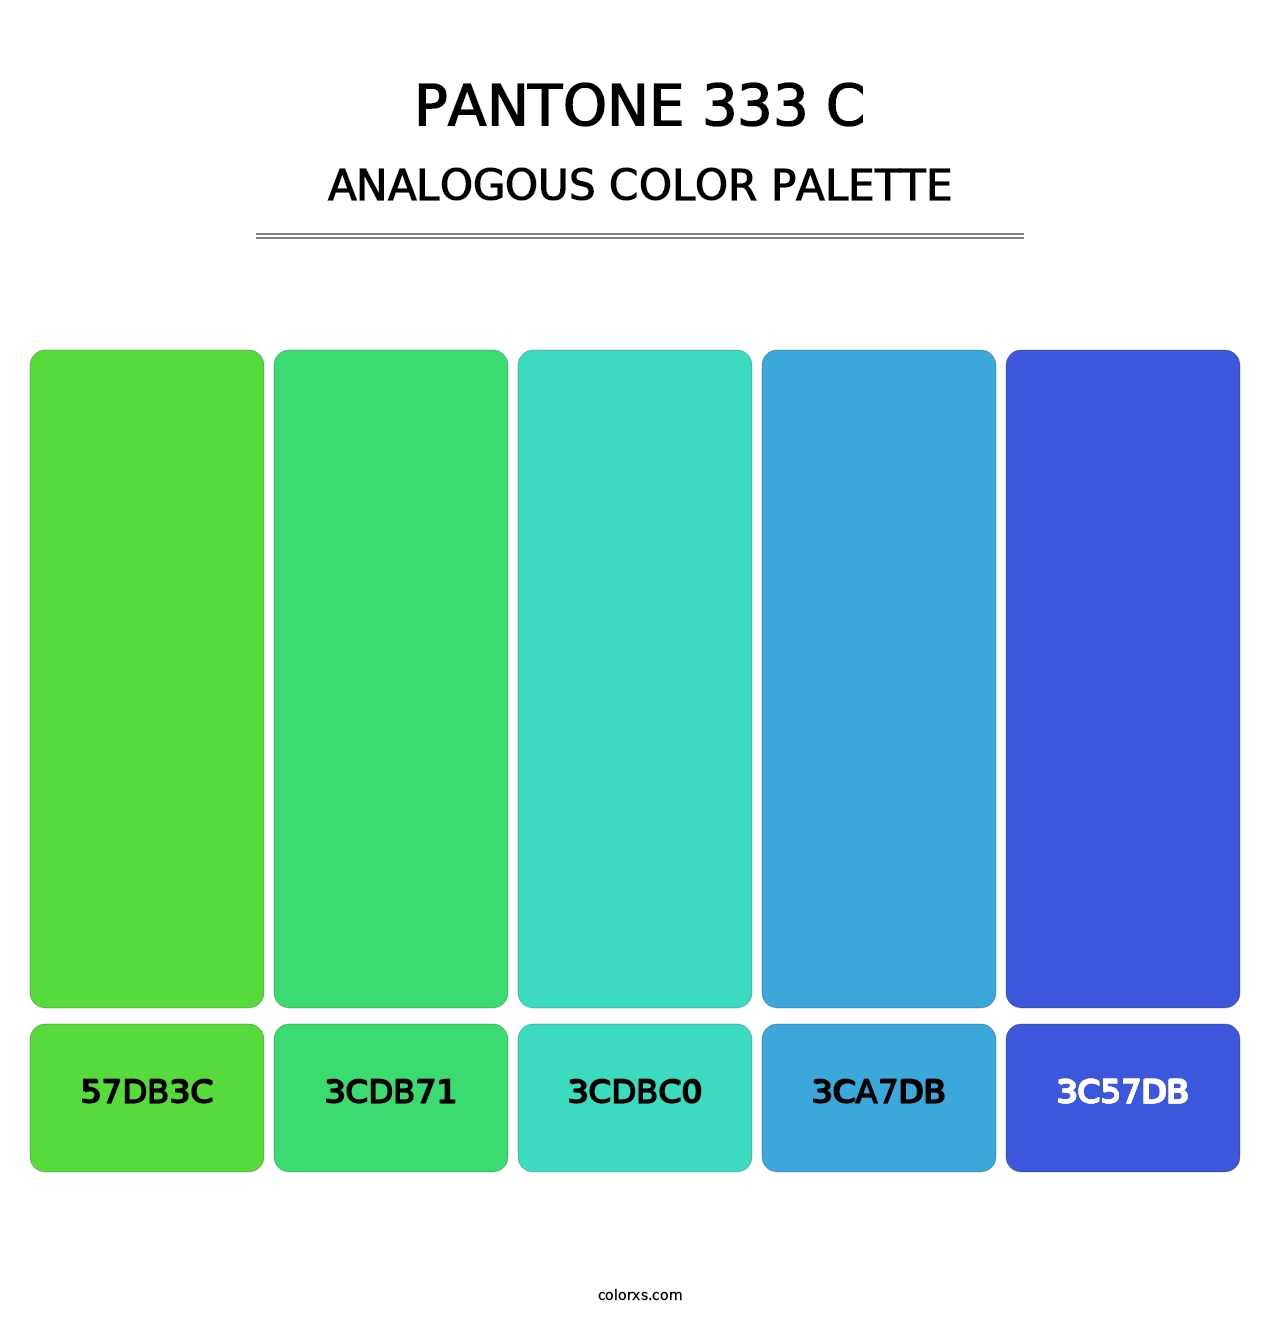 PANTONE 333 C - Analogous Color Palette